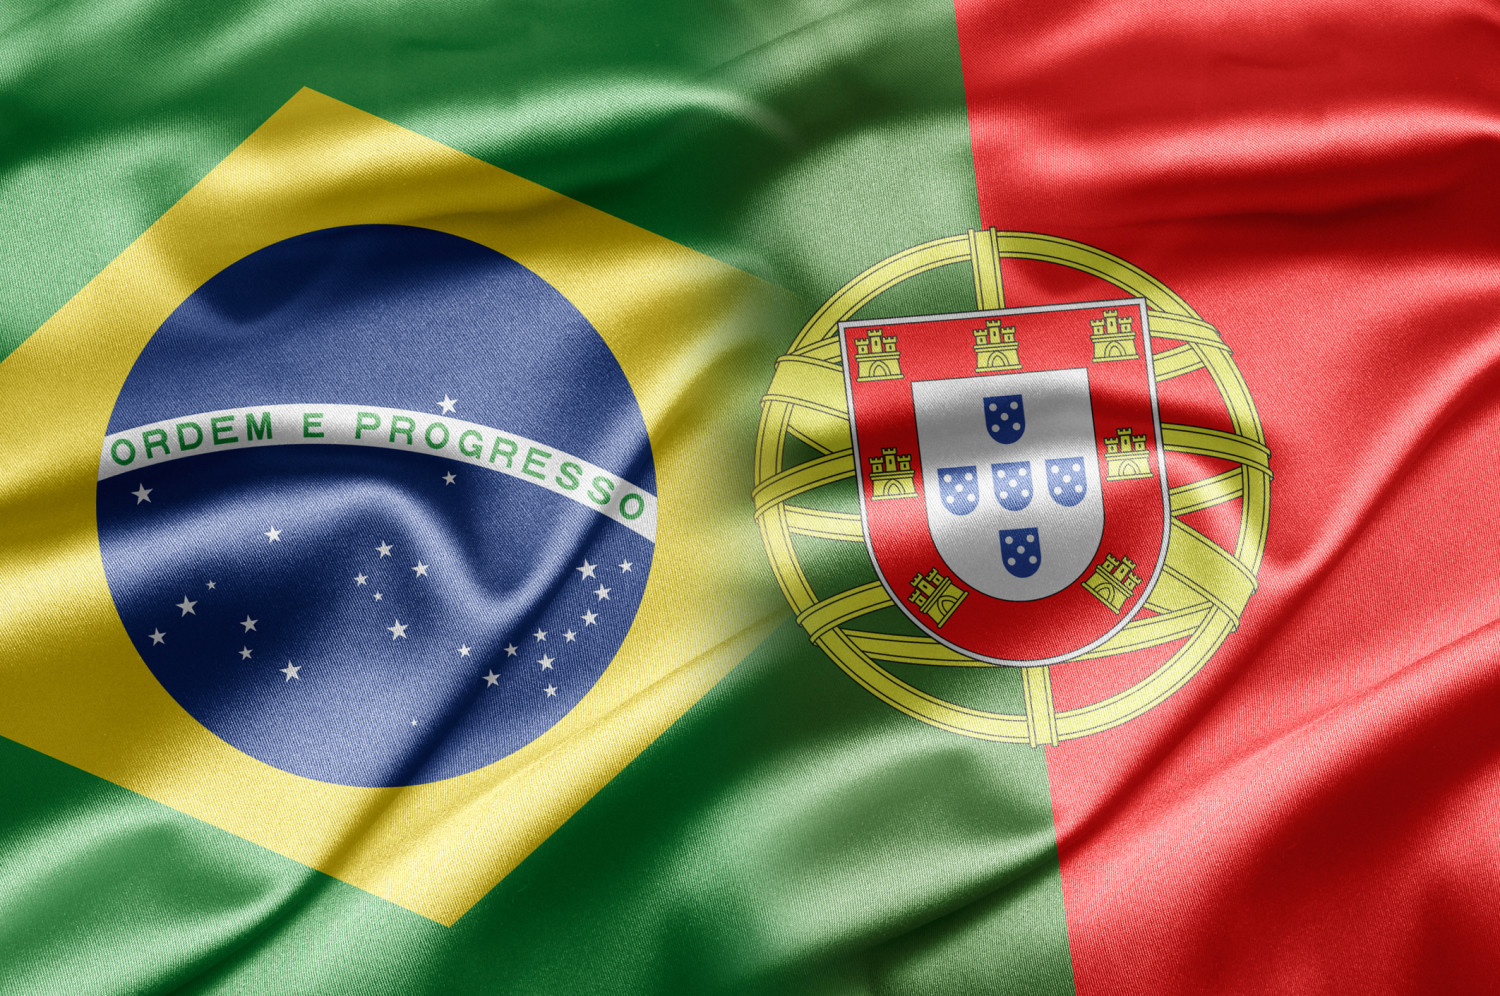 Государственный язык в стране португальский. Португалия и Бразилия. Флаг Бразилии. Португальский язык в Бразилии. Флаг Португалии и Бразилии.